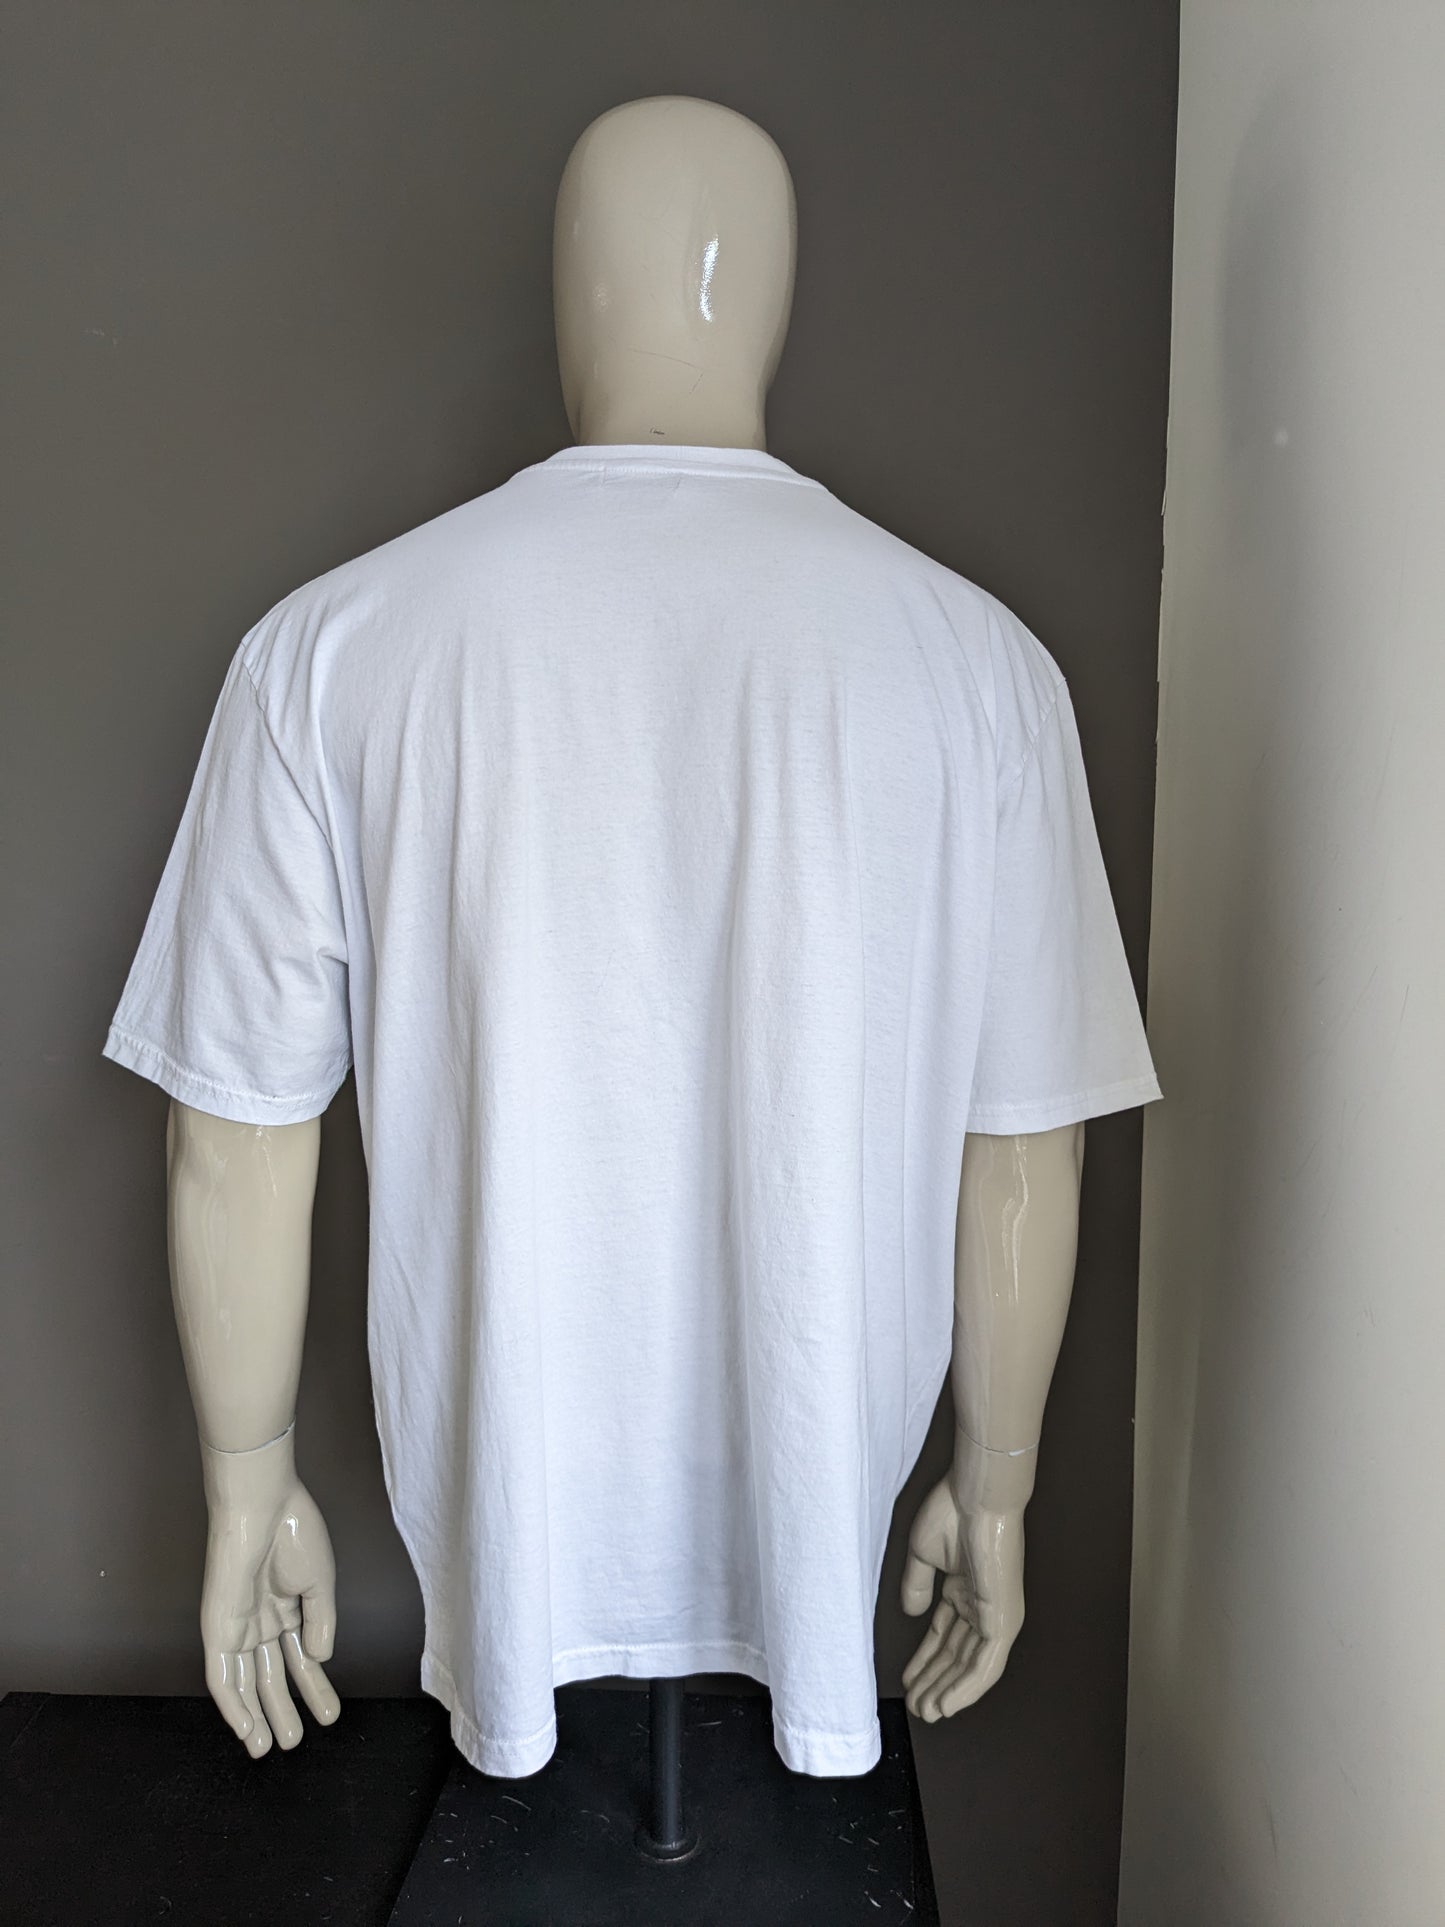 Atlas para hombres camisa con cuello en V. Blanco con impresión. Tamaño 5xl / xxxxxl.